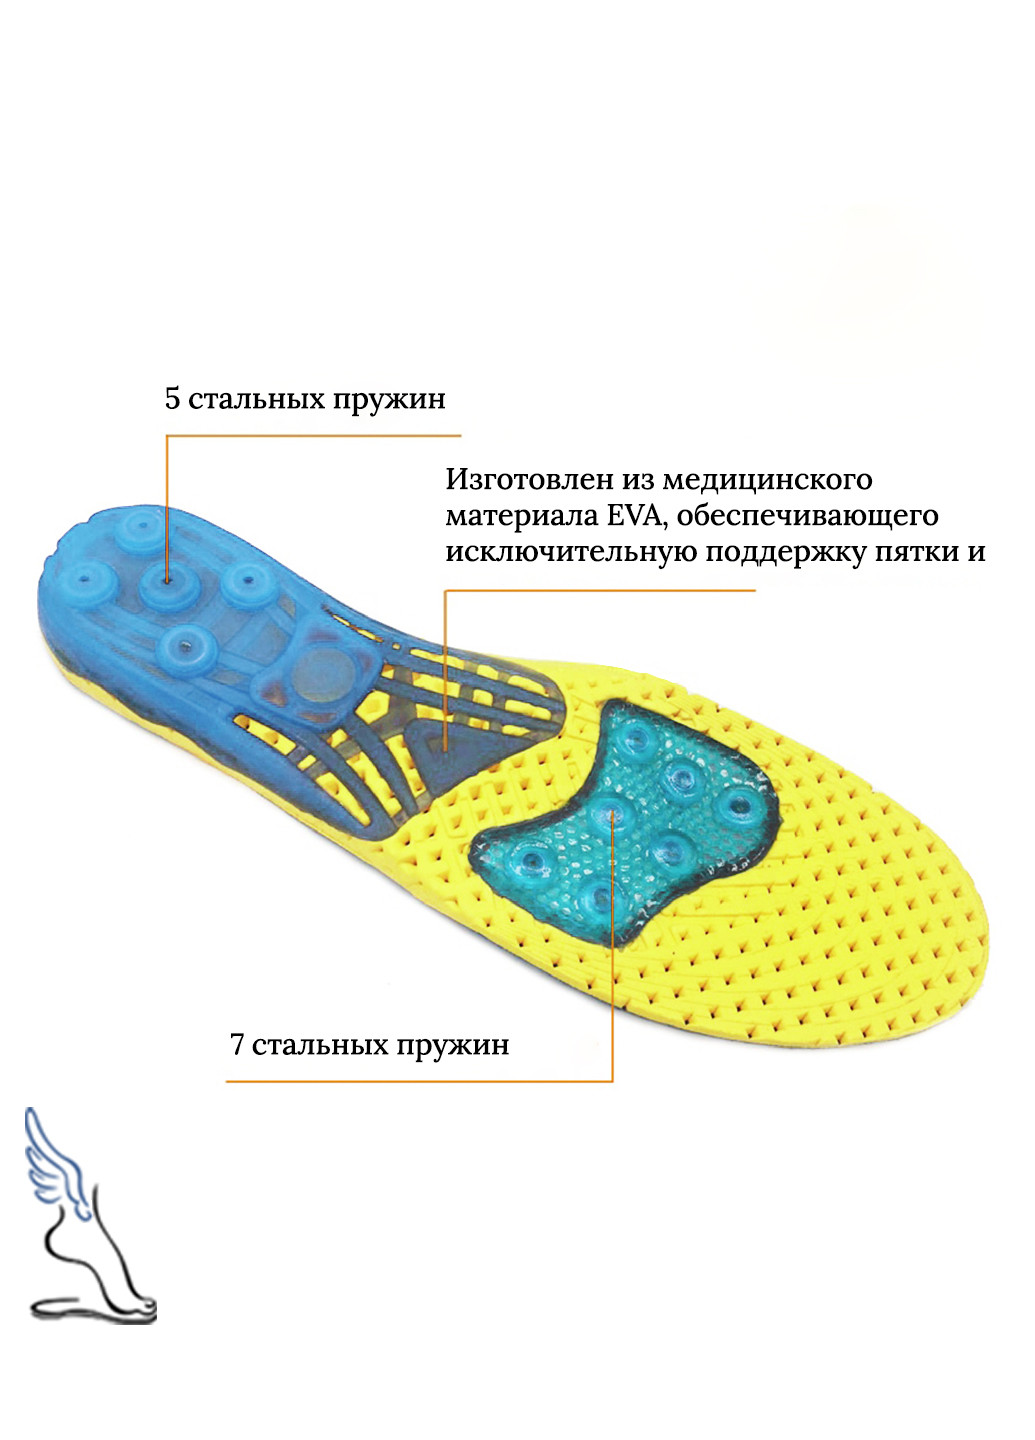 Дихаючі амортизаційні устілки для взуття з каркасною підтримкою стопи для занять спортом 40-43р (26.5-28 см) No Brand (252296275)